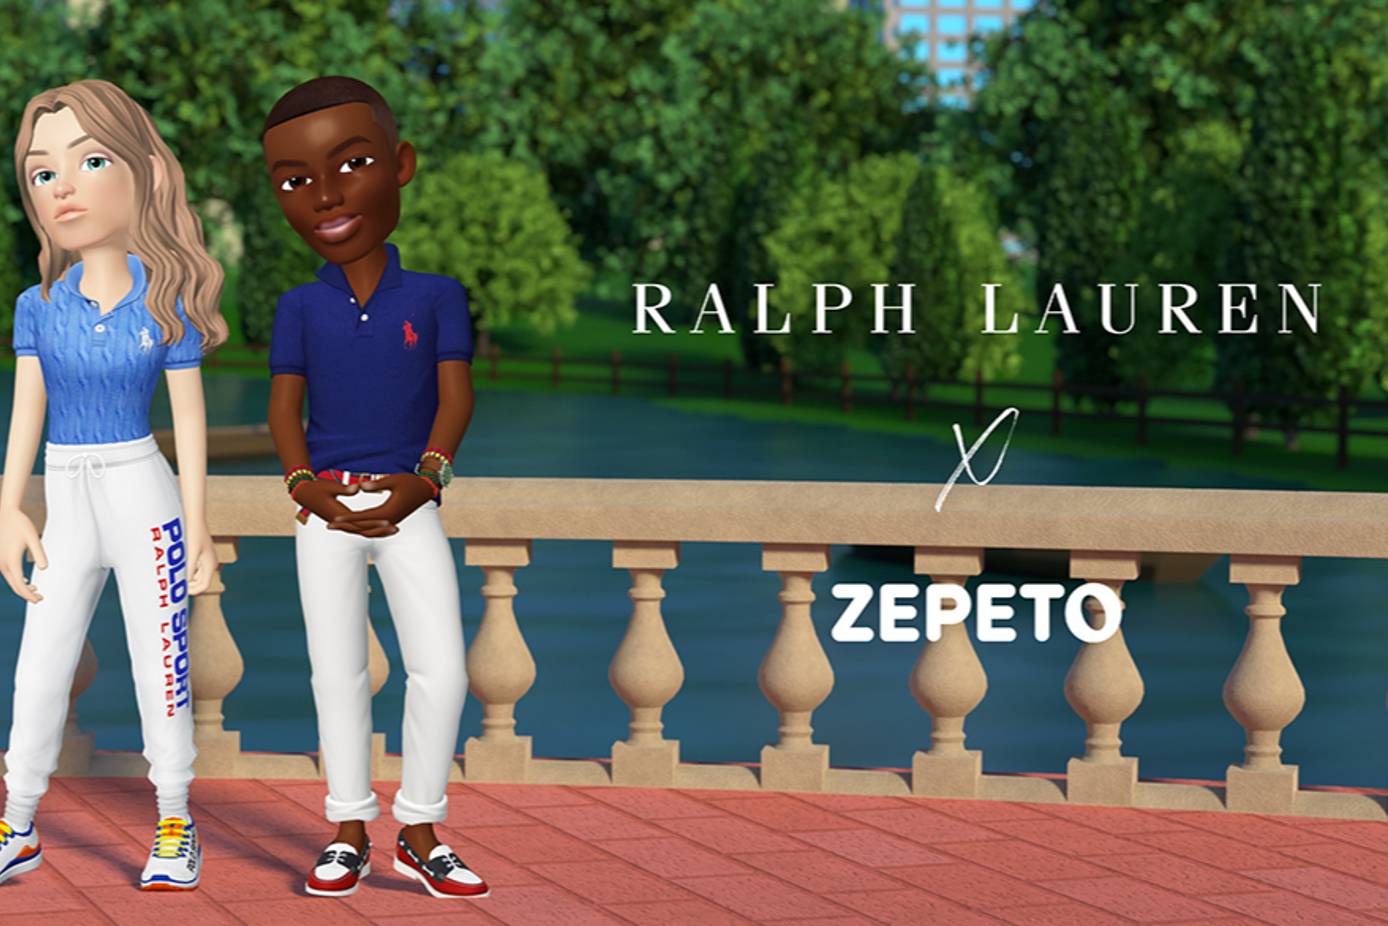 PROJECT Brand Highlight: Polo Ralph Lauren